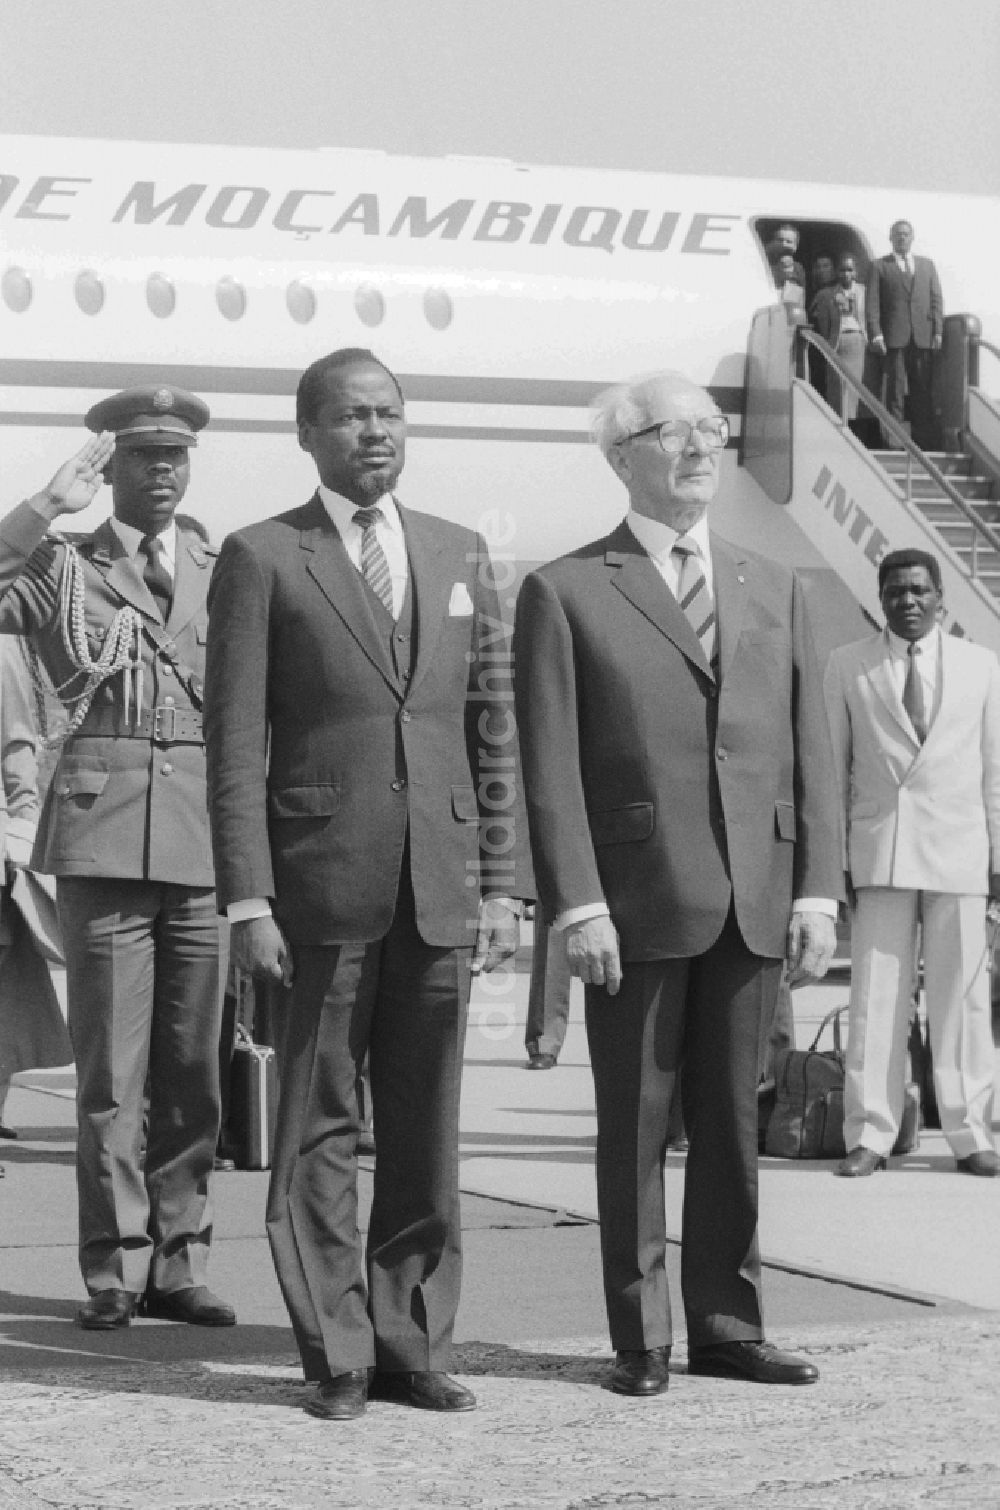 DDR-Bildarchiv: Schönefeld - Staatsbesuch Mosambik bei der Ankunft auf dem Flughafen Schönefeld in Brandenburg in der DDR